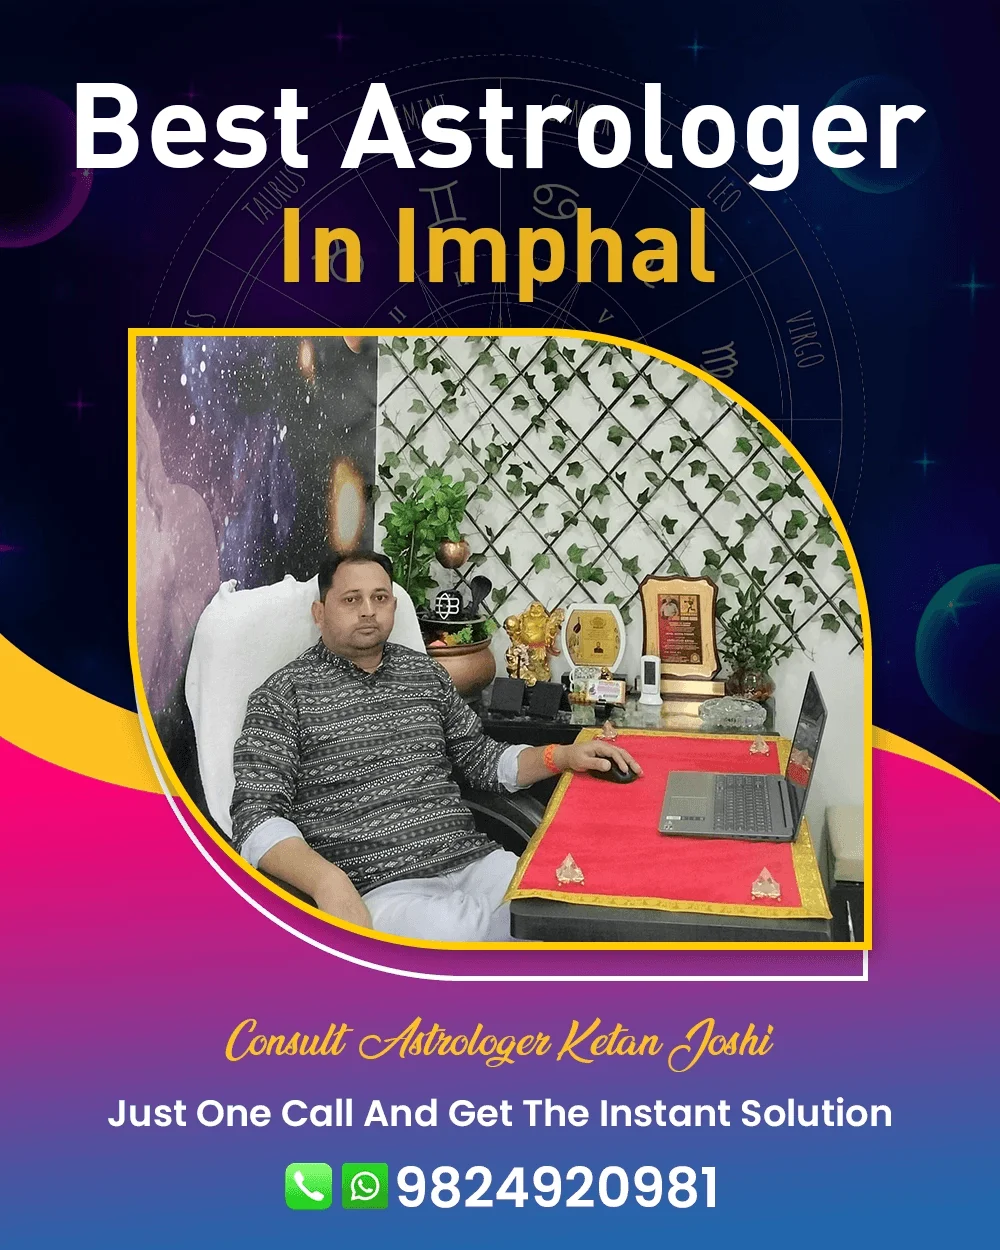 Best Astrologer In Imphal